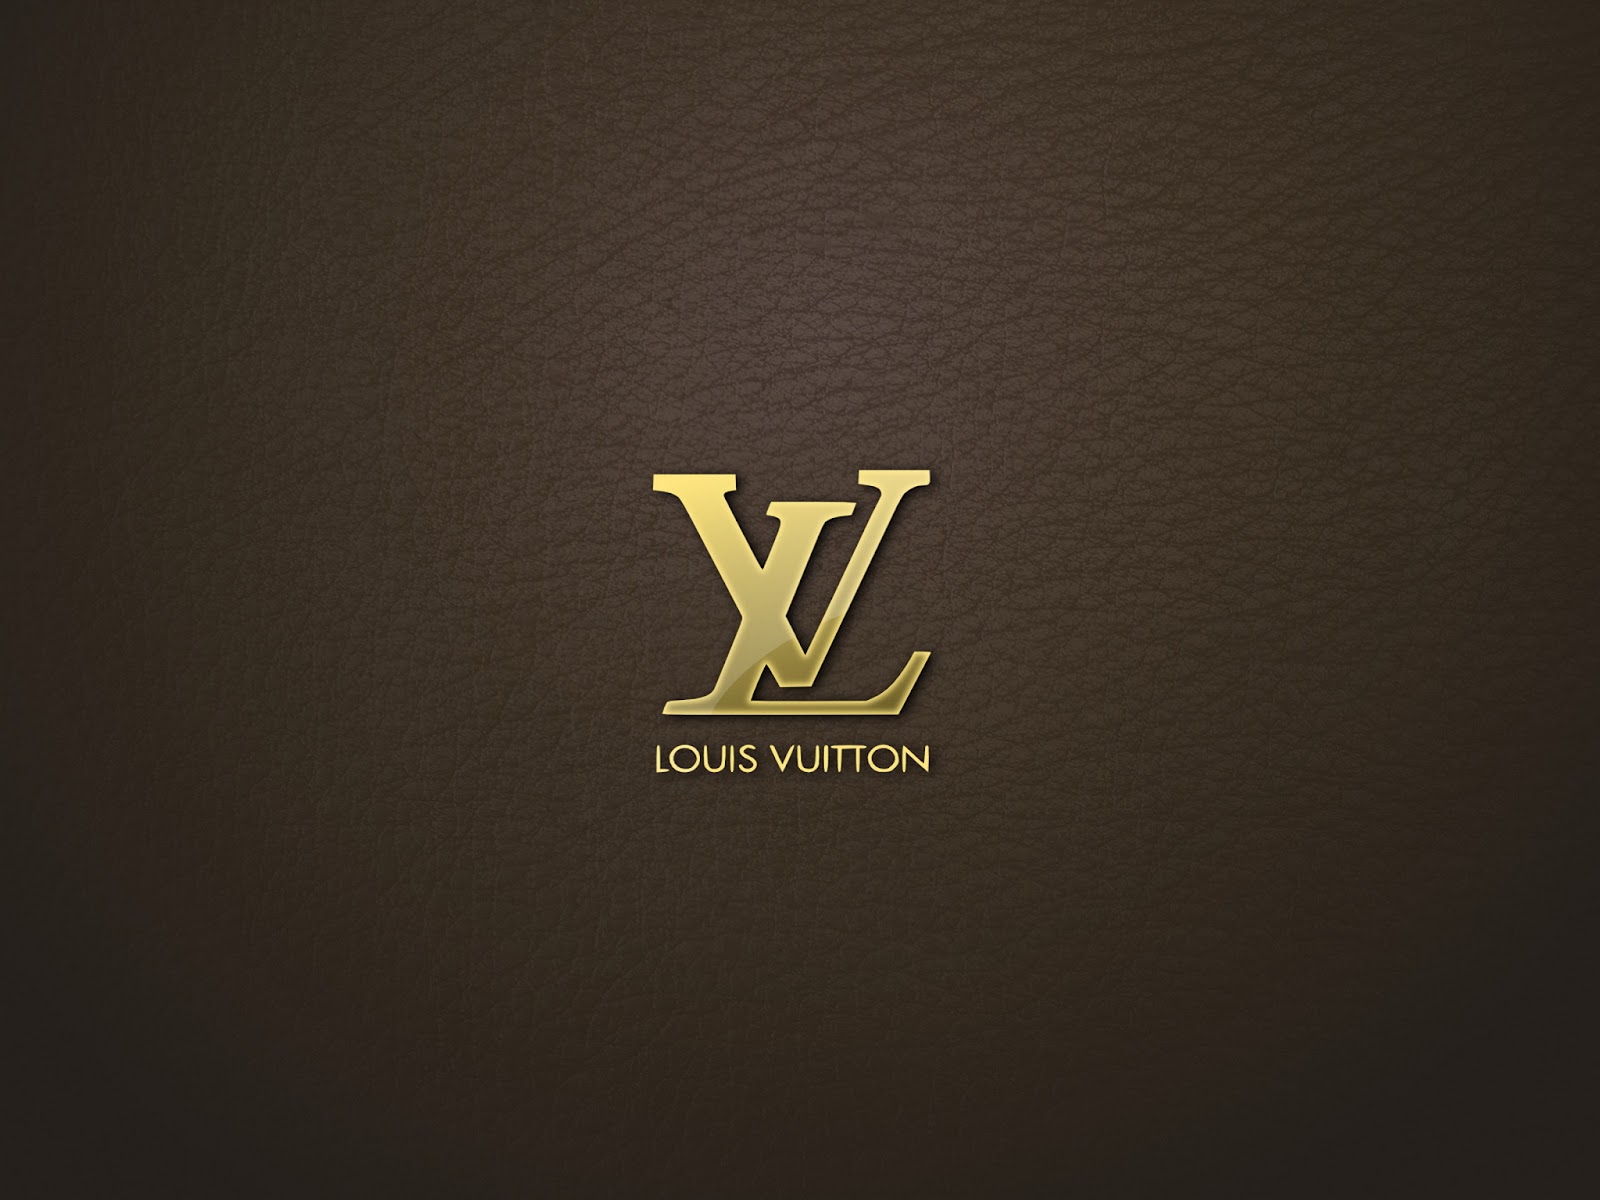 [36+] Louis Vuitton Wallpapers HD on WallpaperSafari